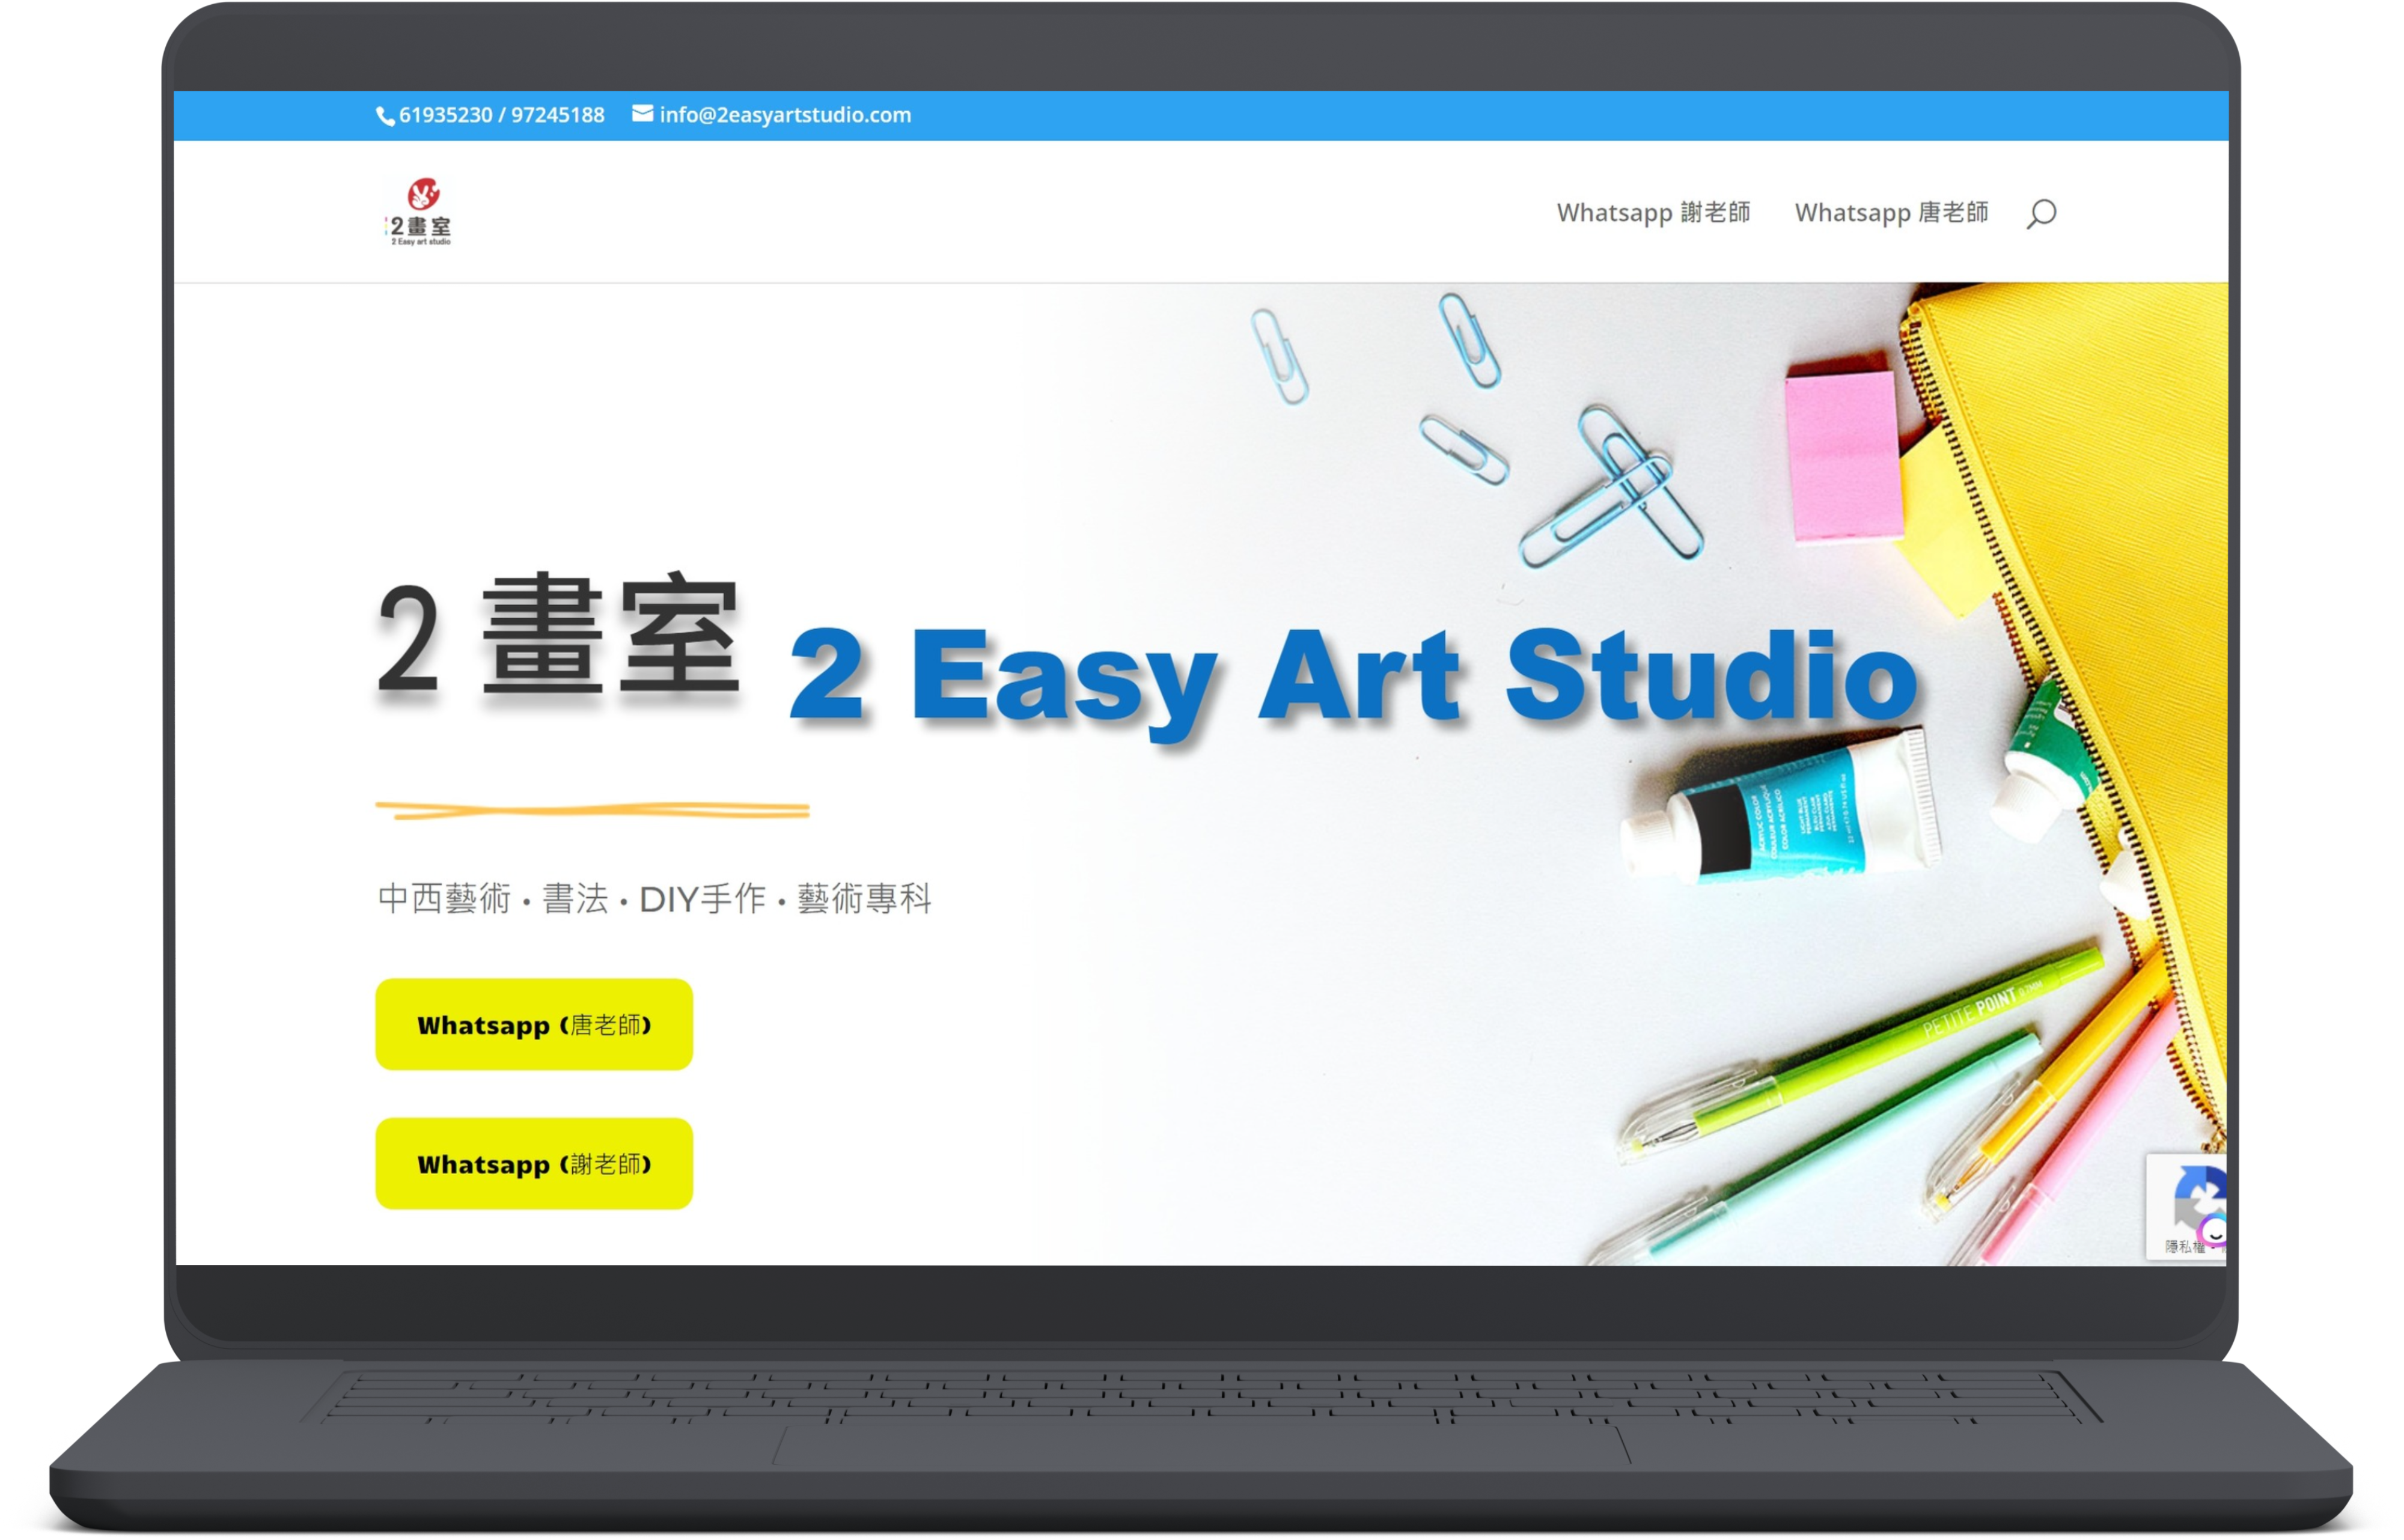 筆記型電腦螢幕上顯示「2 Easy Art Studio」的主頁以及聯絡方式。背景包括顏料、畫筆、迴紋針和筆記本等美術用品。